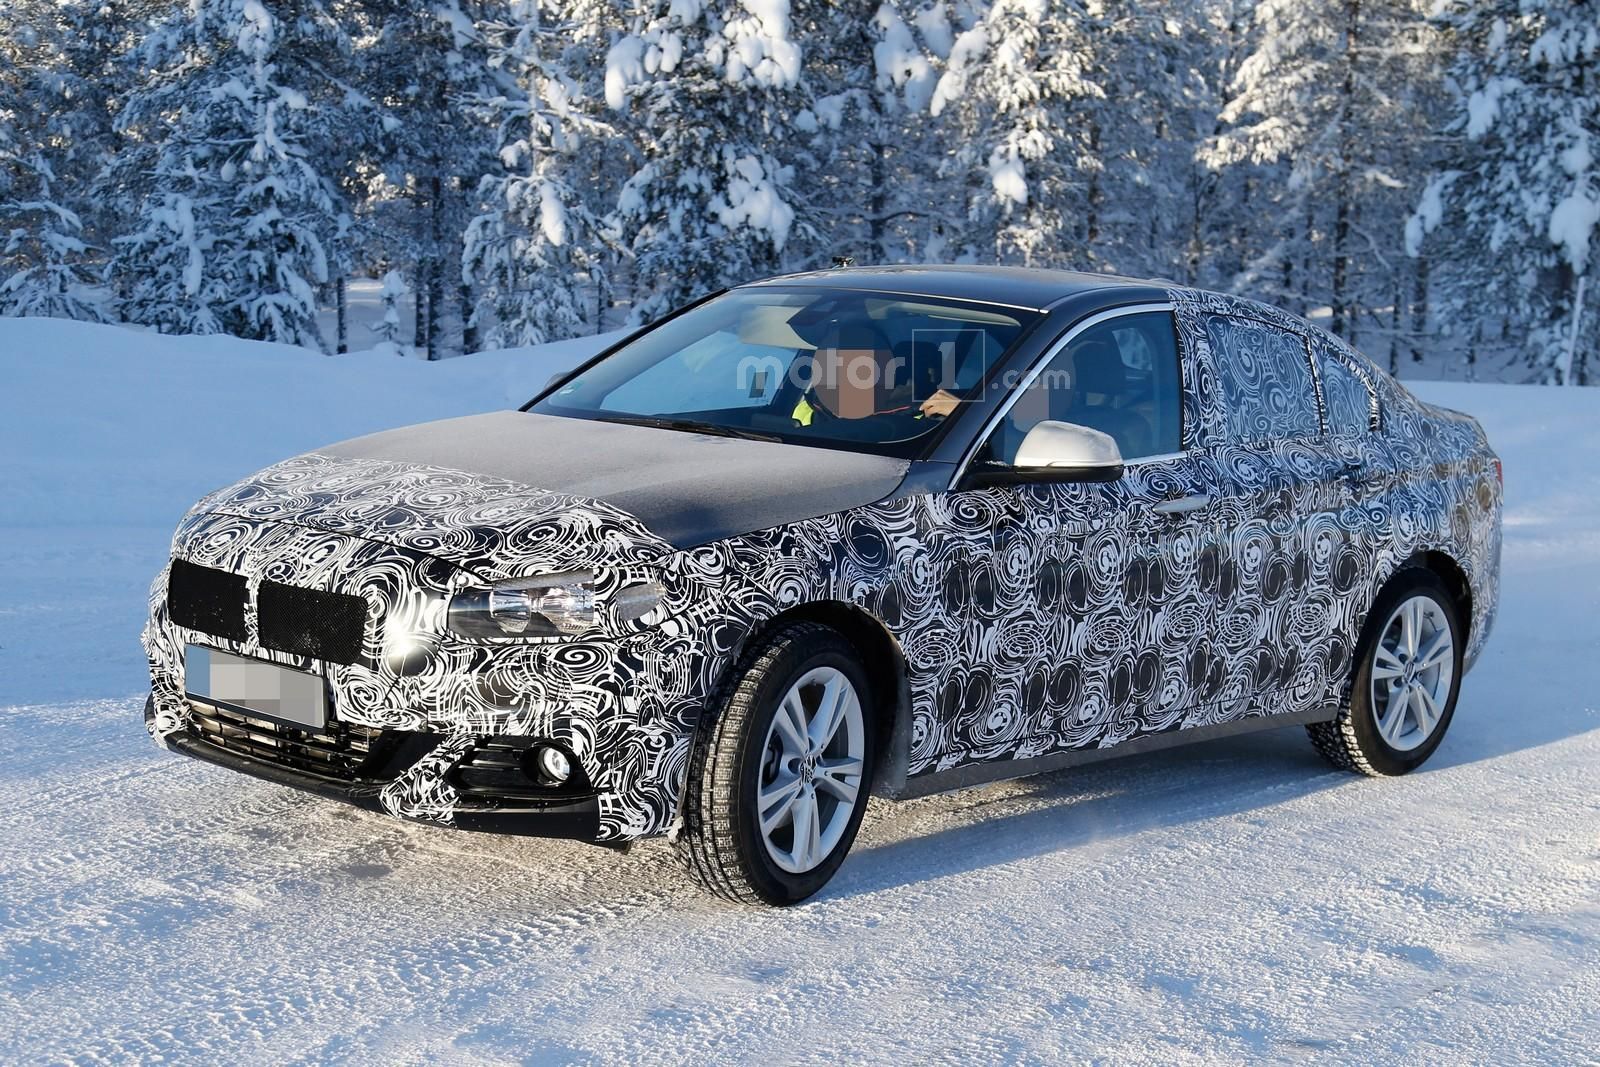 2017 BMW 1-Series Sedan Spied Once More